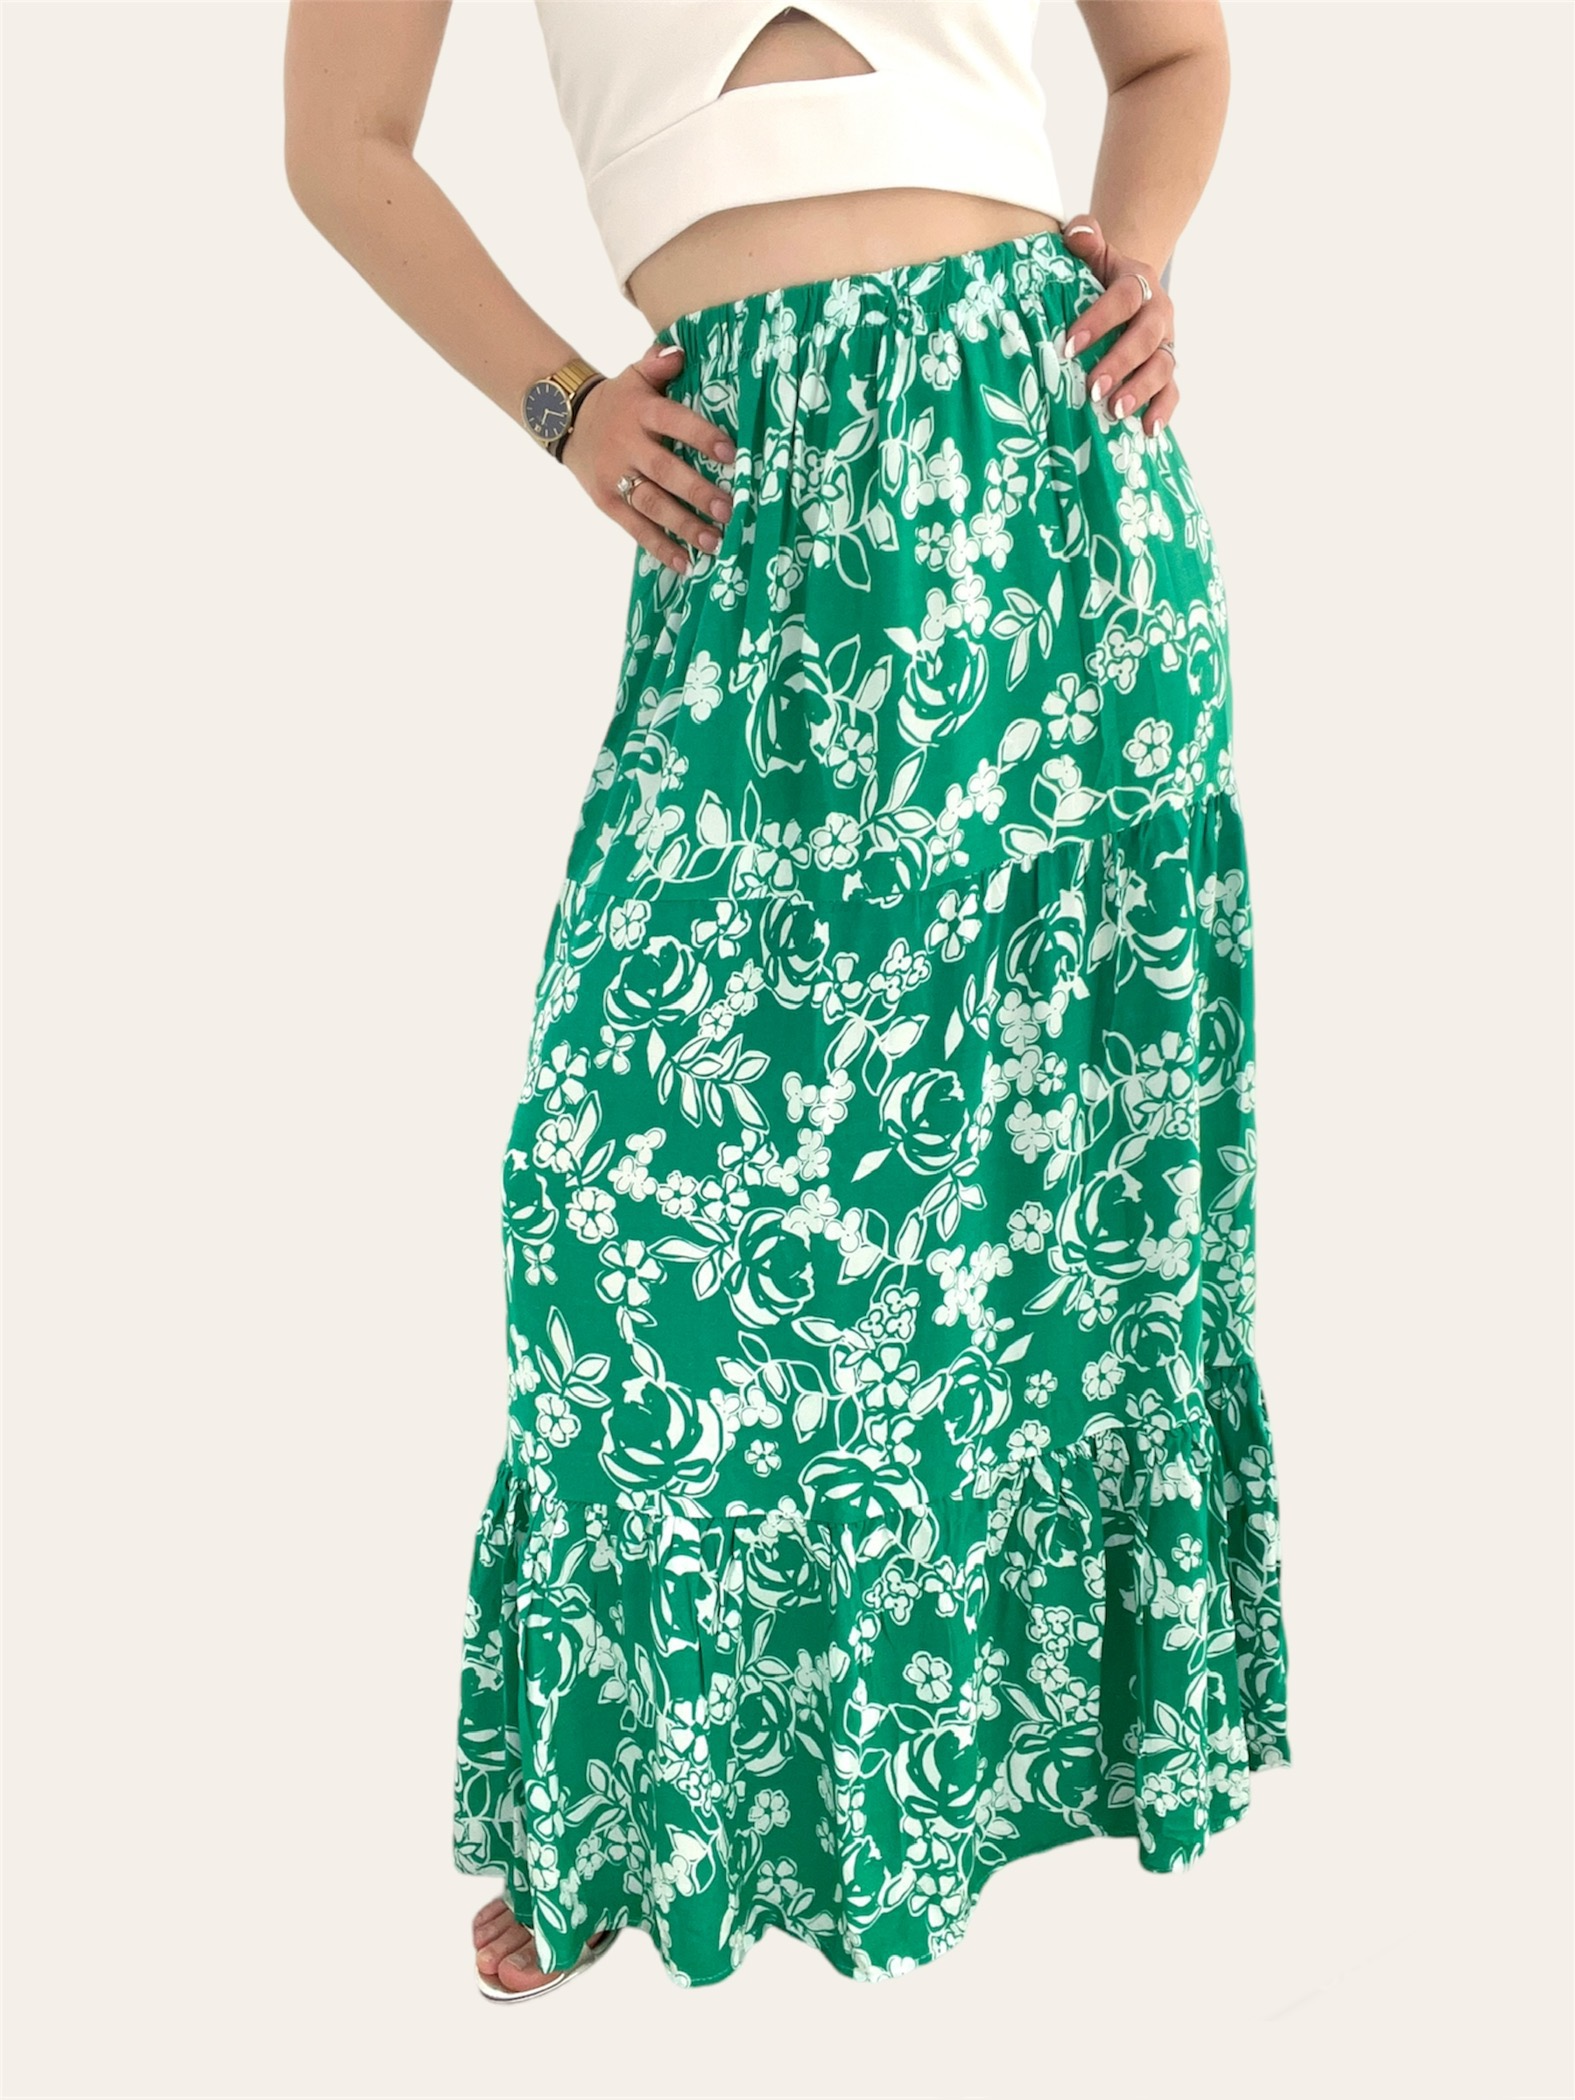 Γυναικεία Αεράτη Φούστα Πράσινη Εμπριμέ